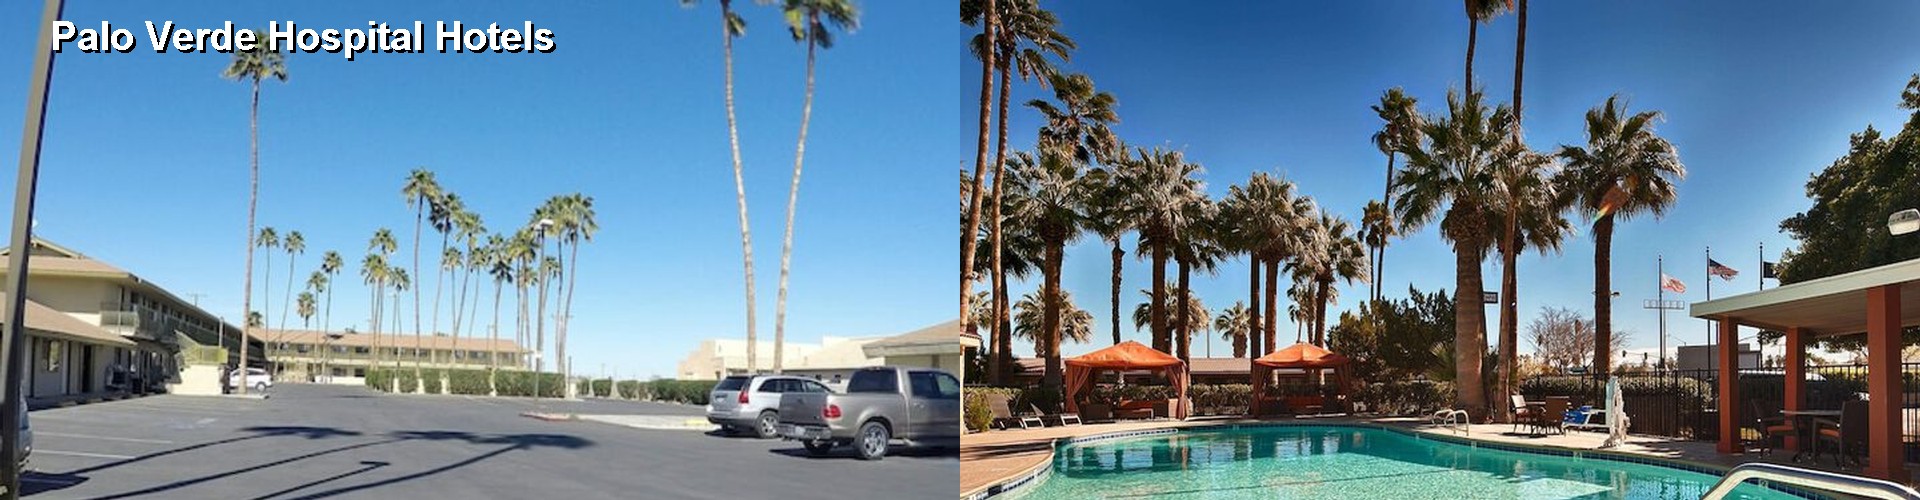 4 Best Hotels near Palo Verde Hospital